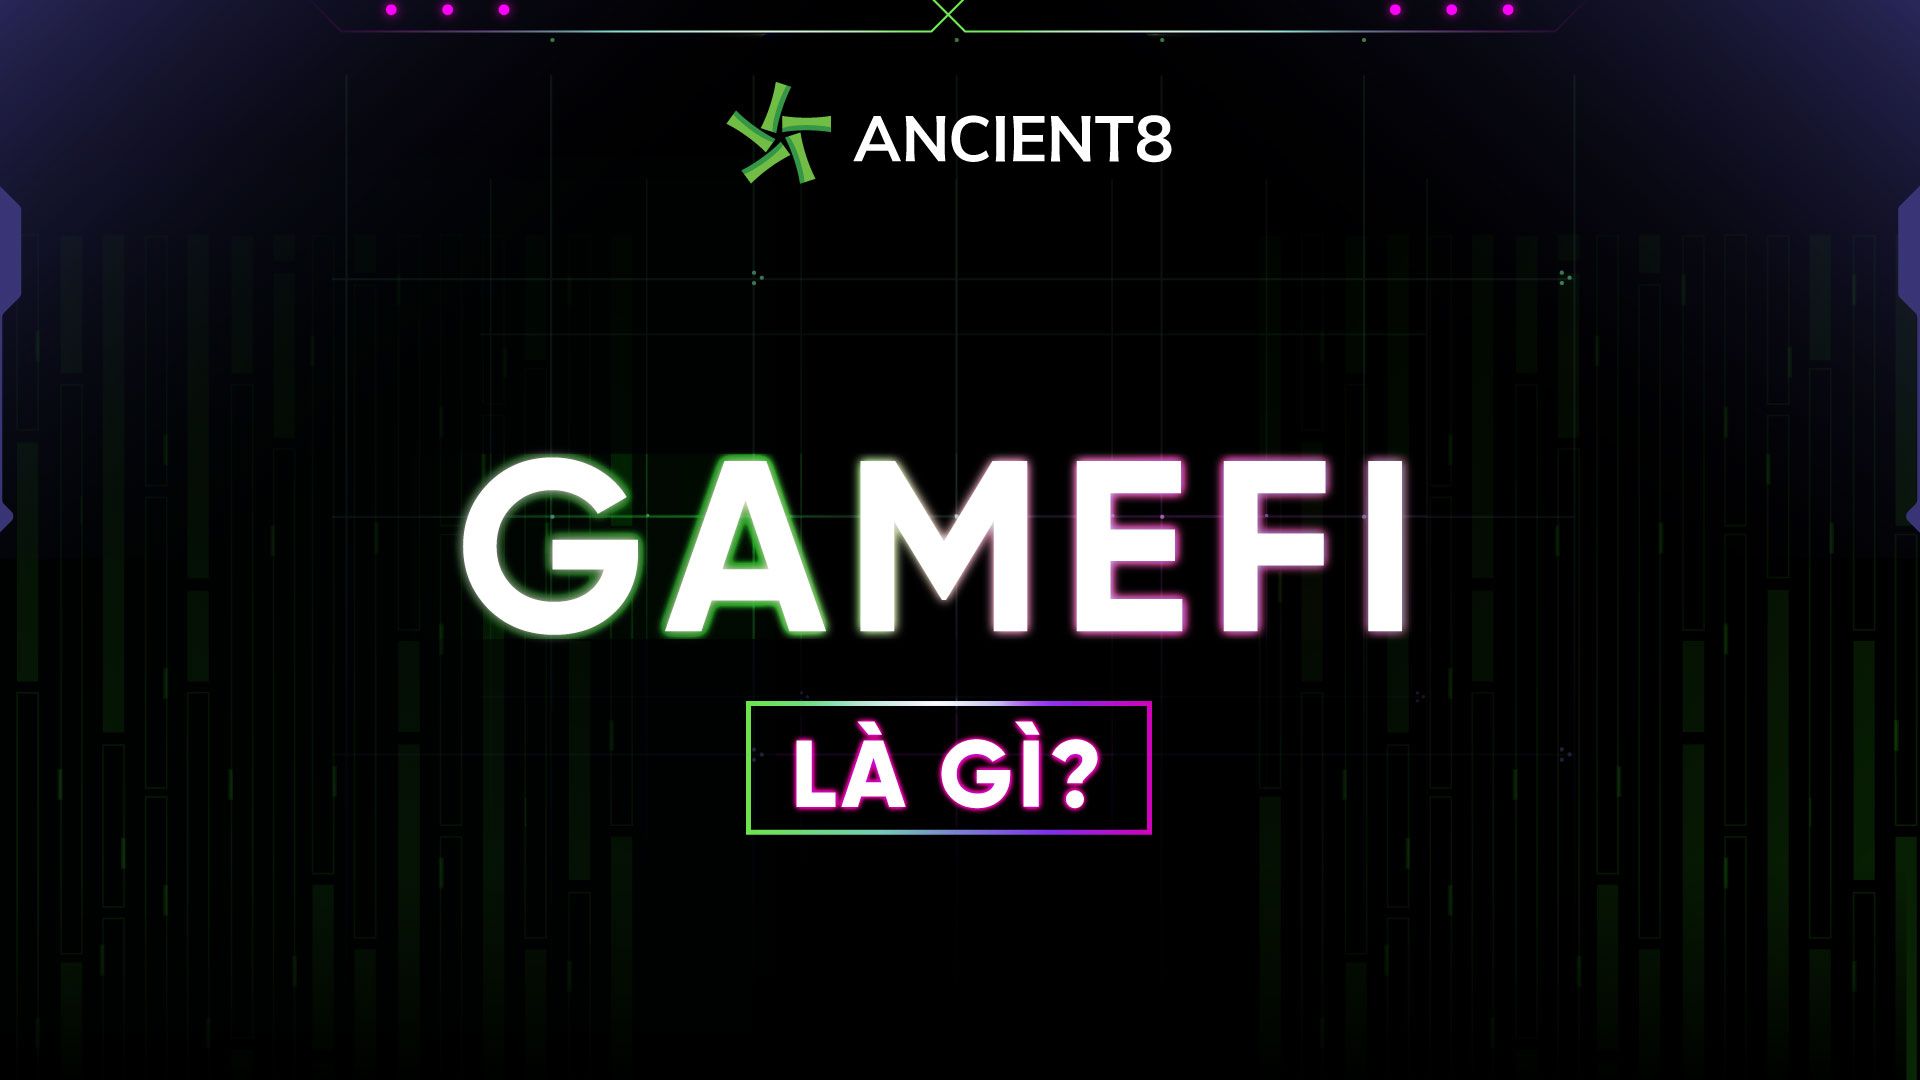 Gamefi là gì?